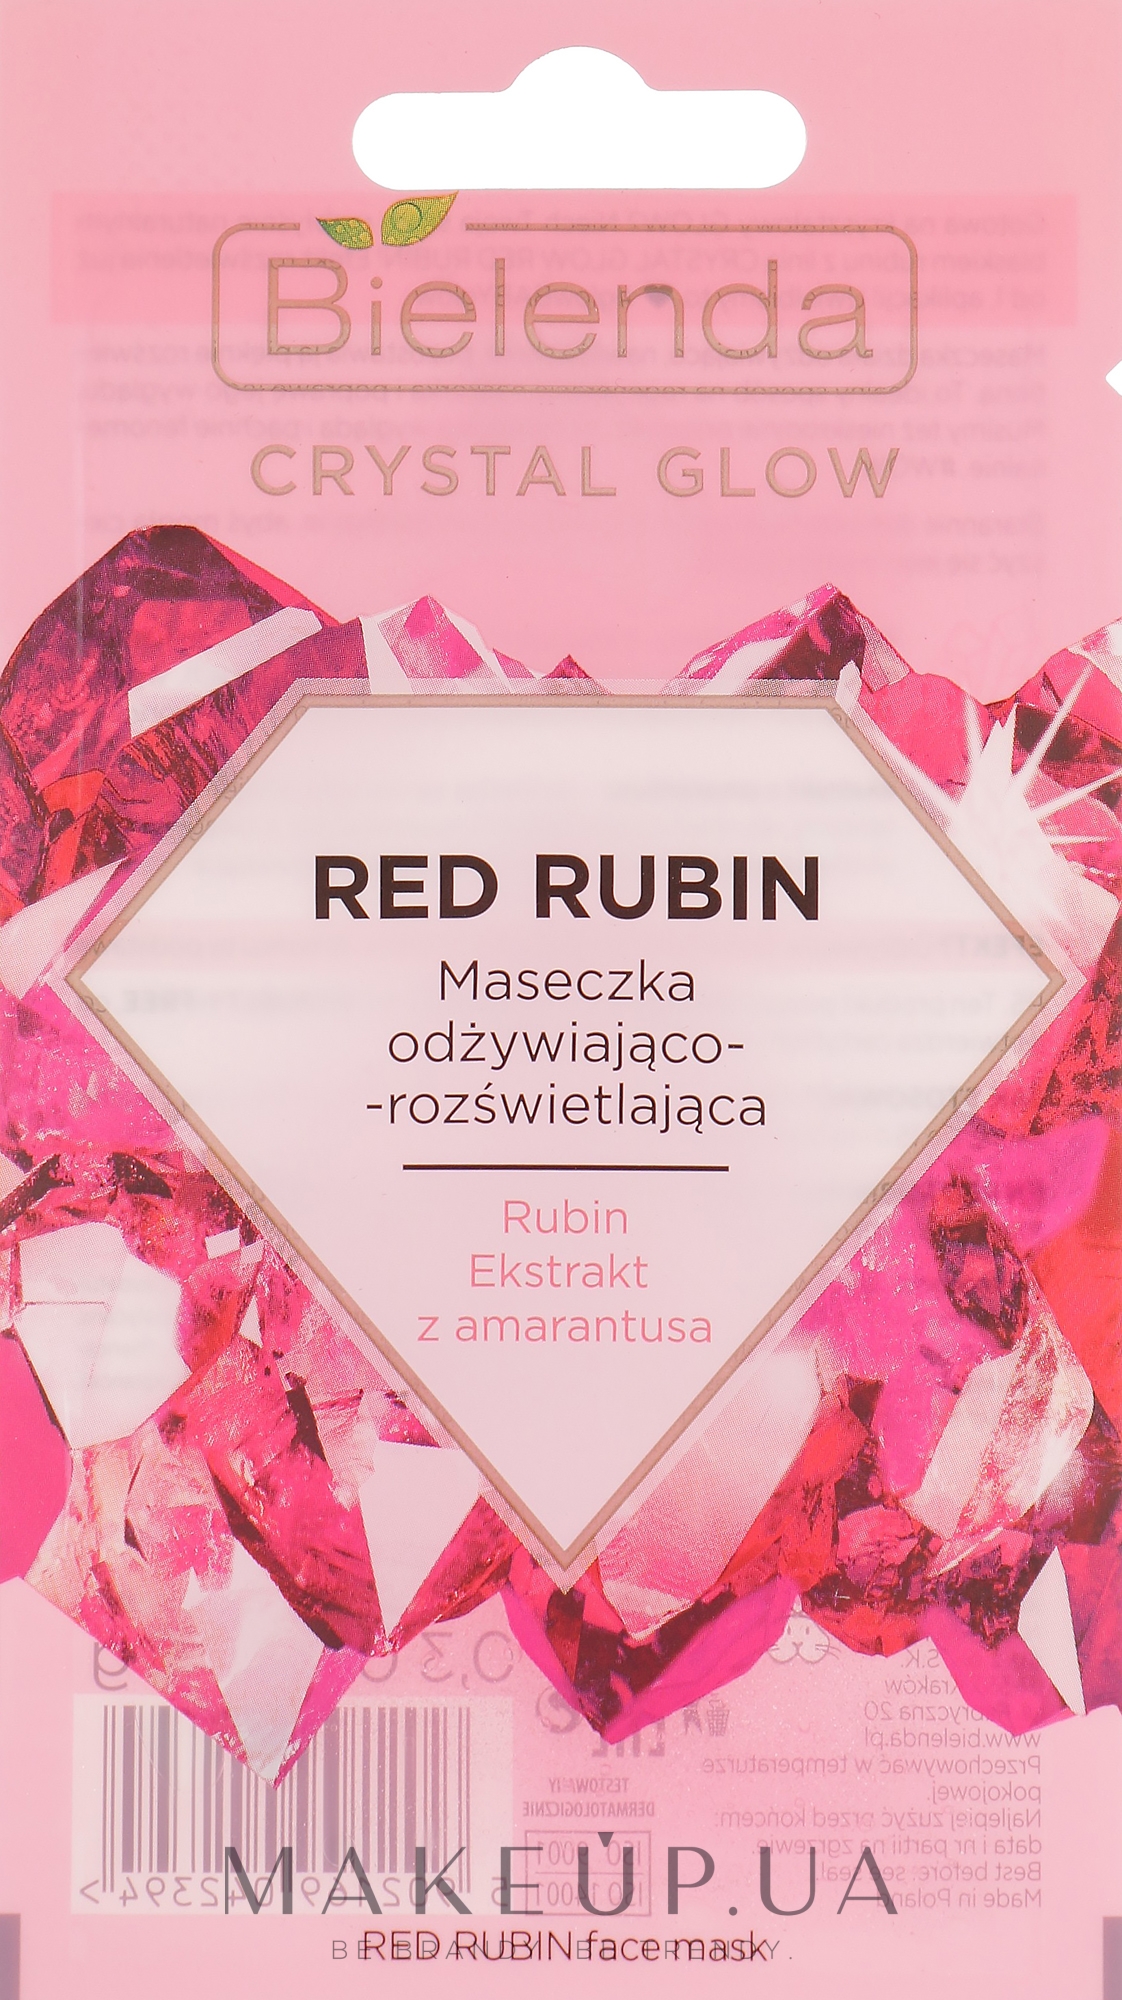 Живильна й освітлювальна маска для обличчя - Bielenda Crystal Glow Red Rubin — фото 8g